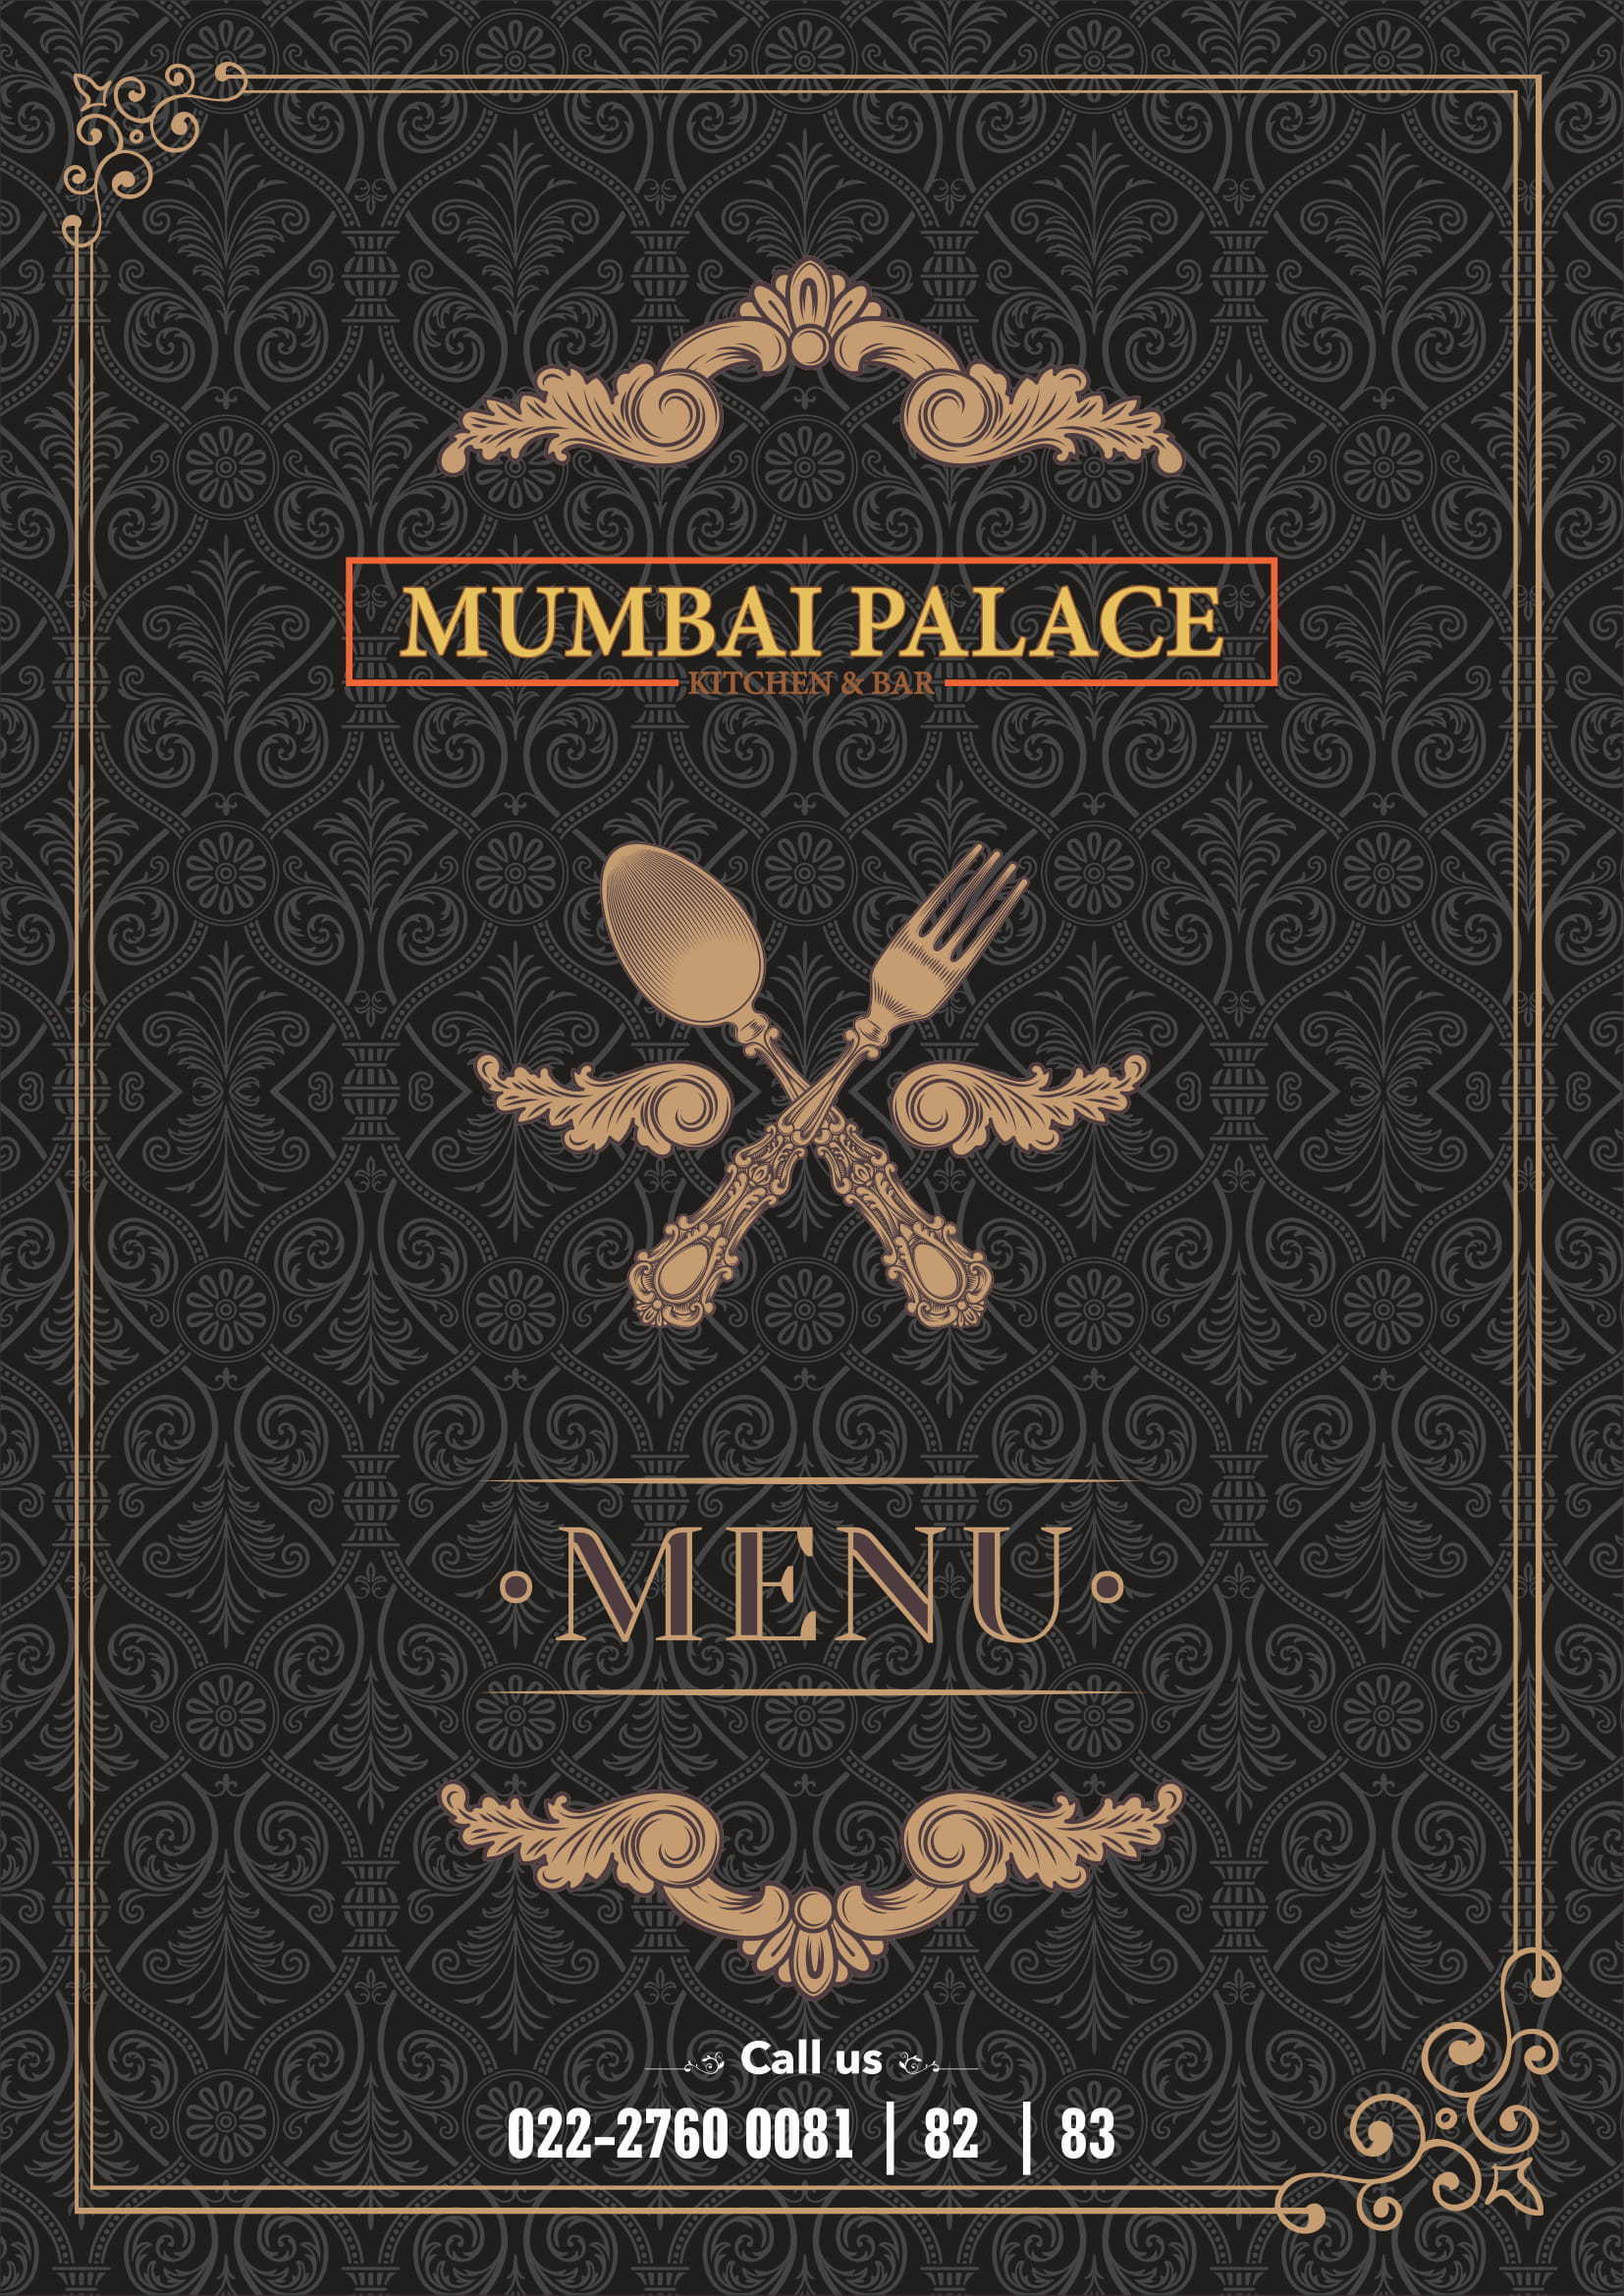 Mumbai Palace Kitchen Bar Menu Zomato